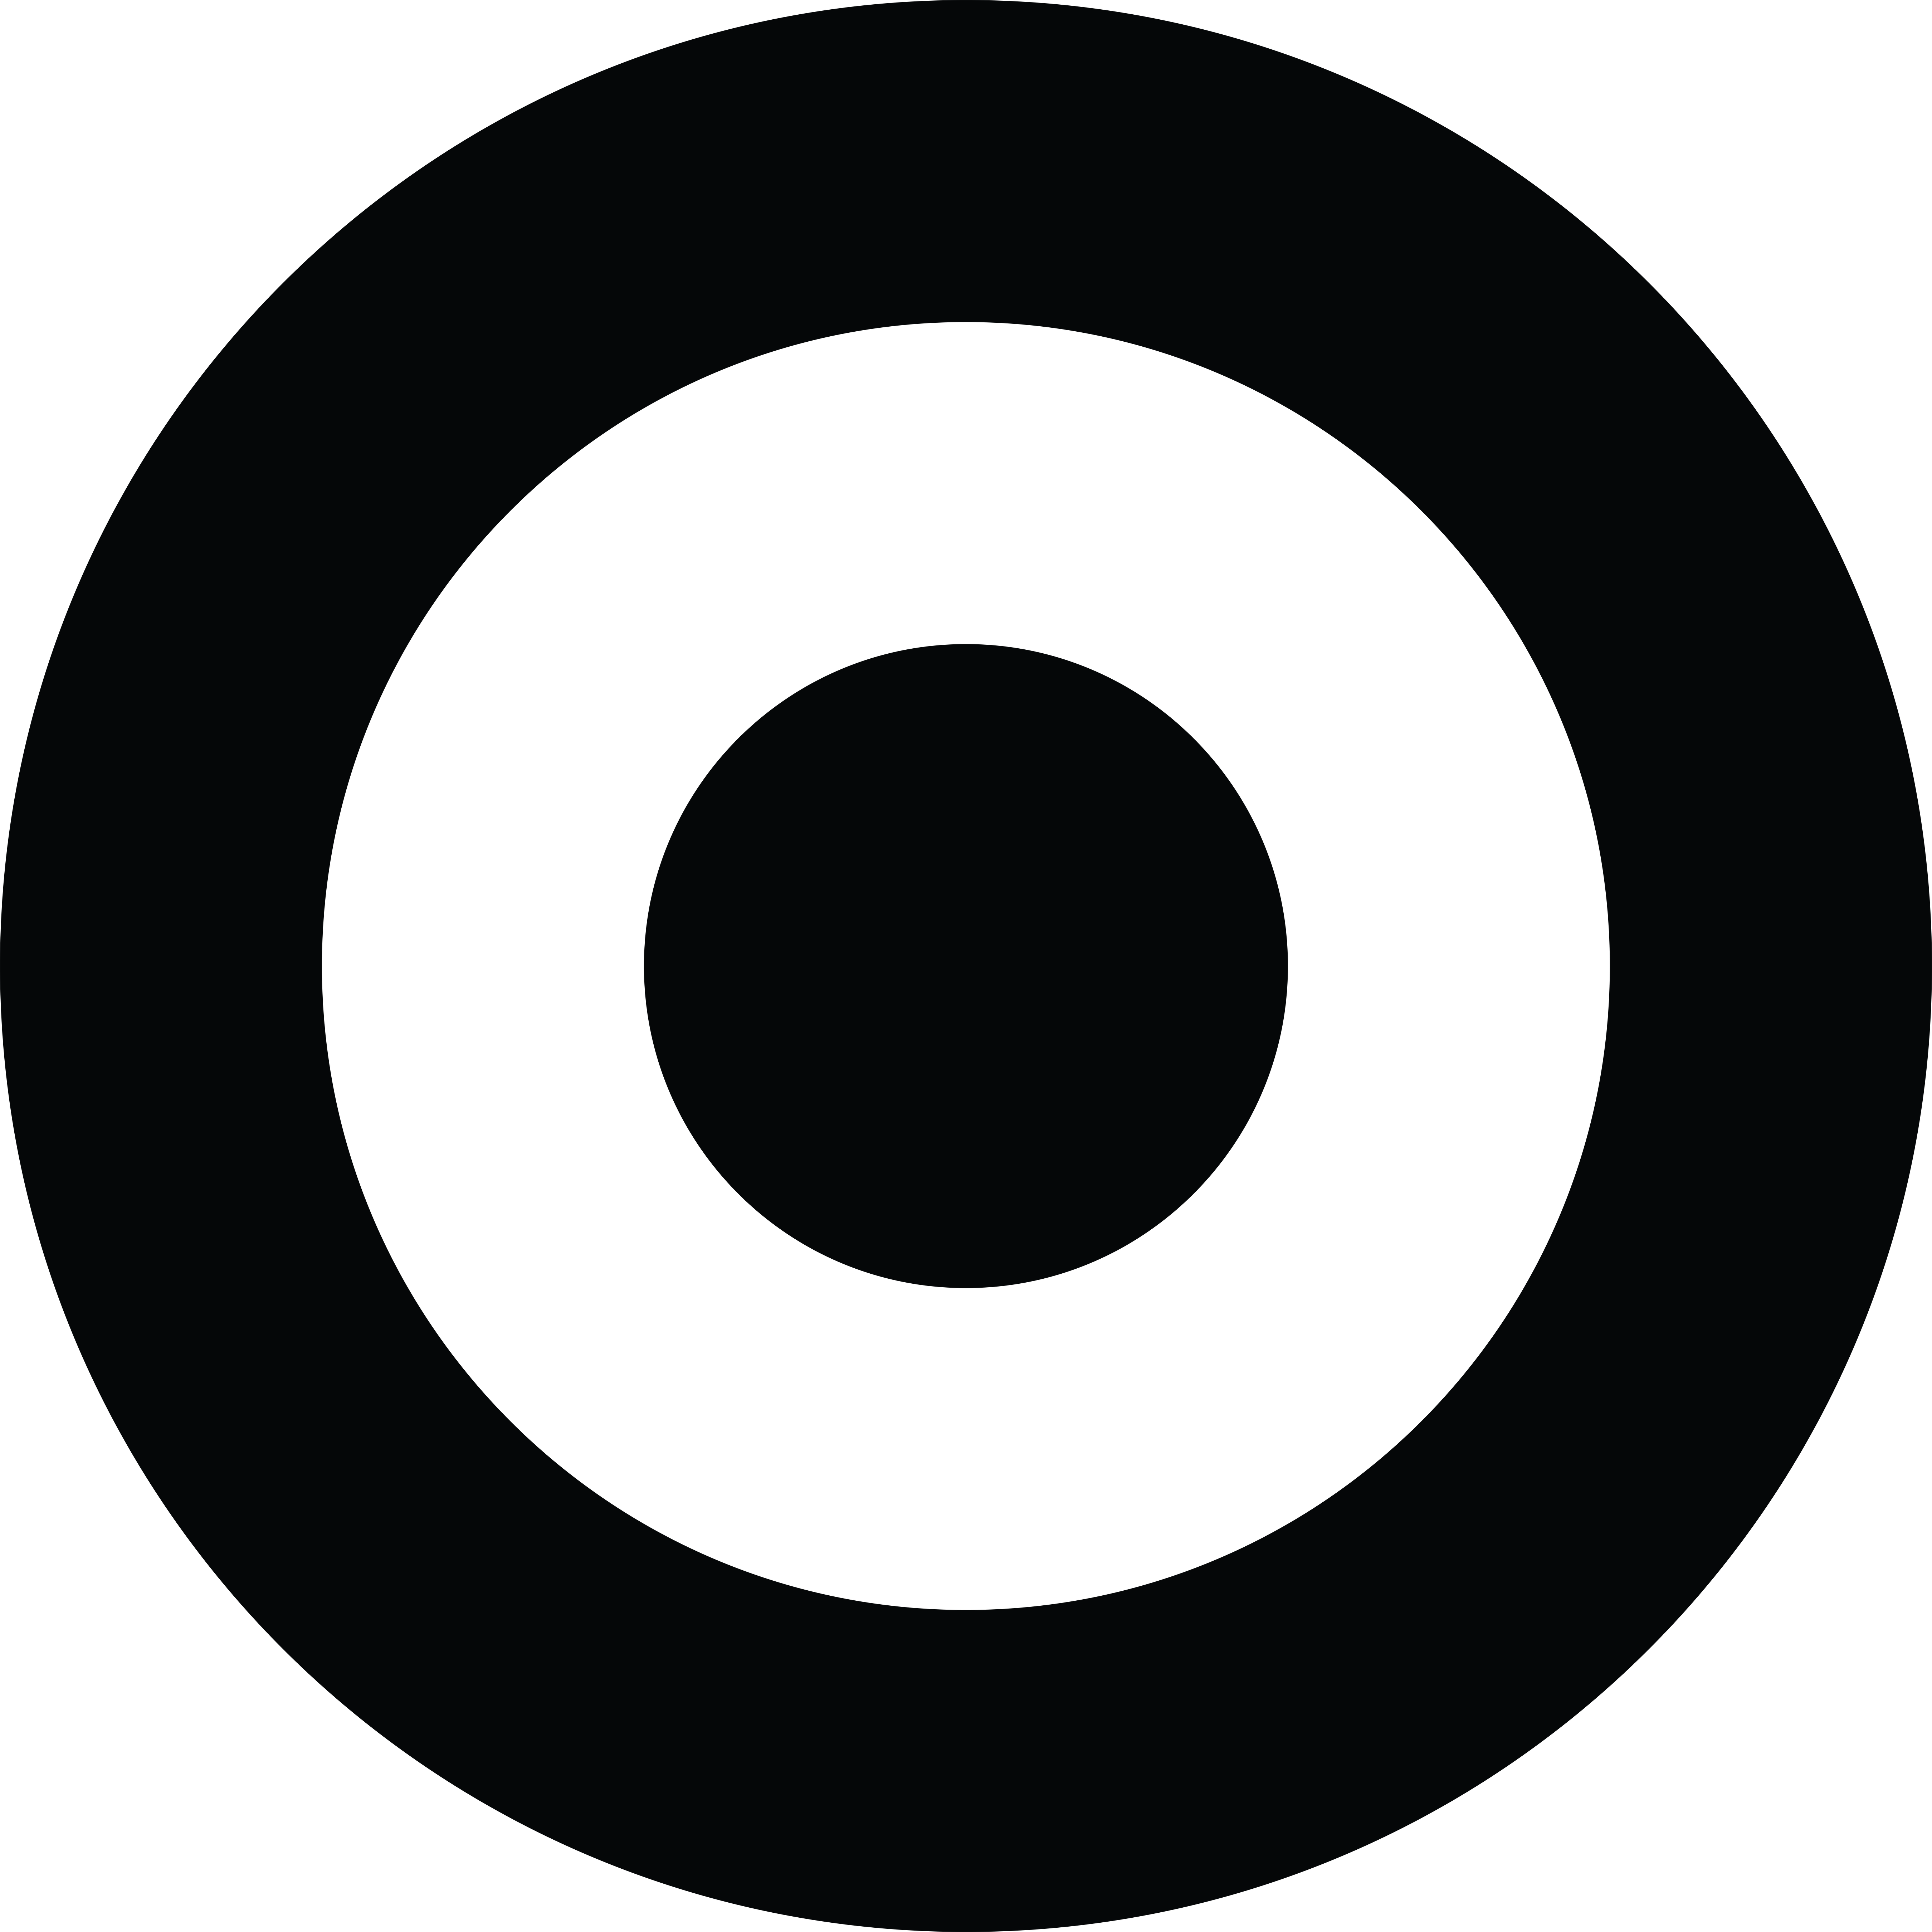 Target Logo transparent PNG - StickPNG